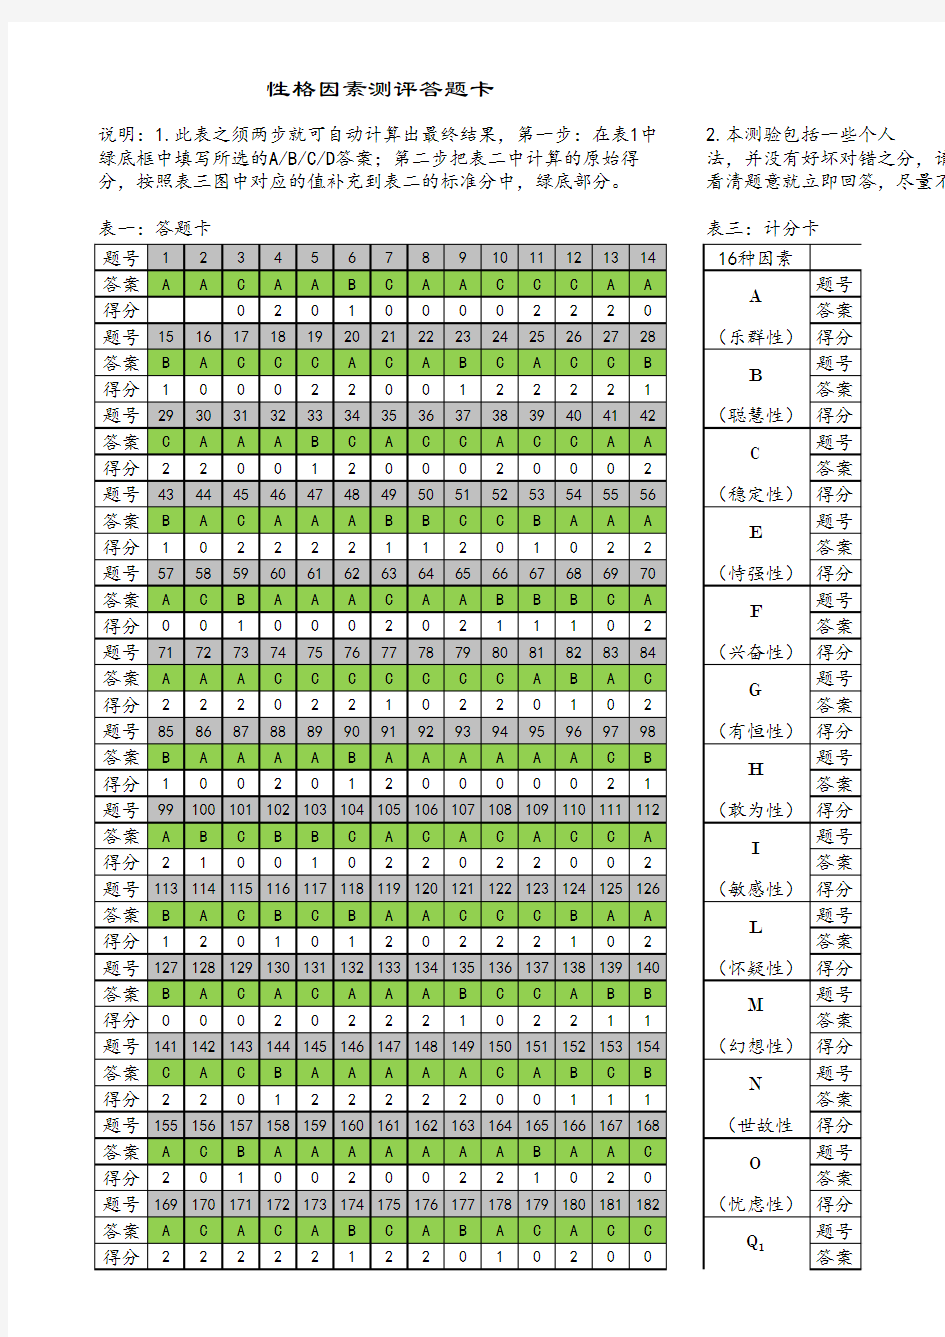 卡特尔十六种个性因素测试(16PF人格测试)自动计算分数G